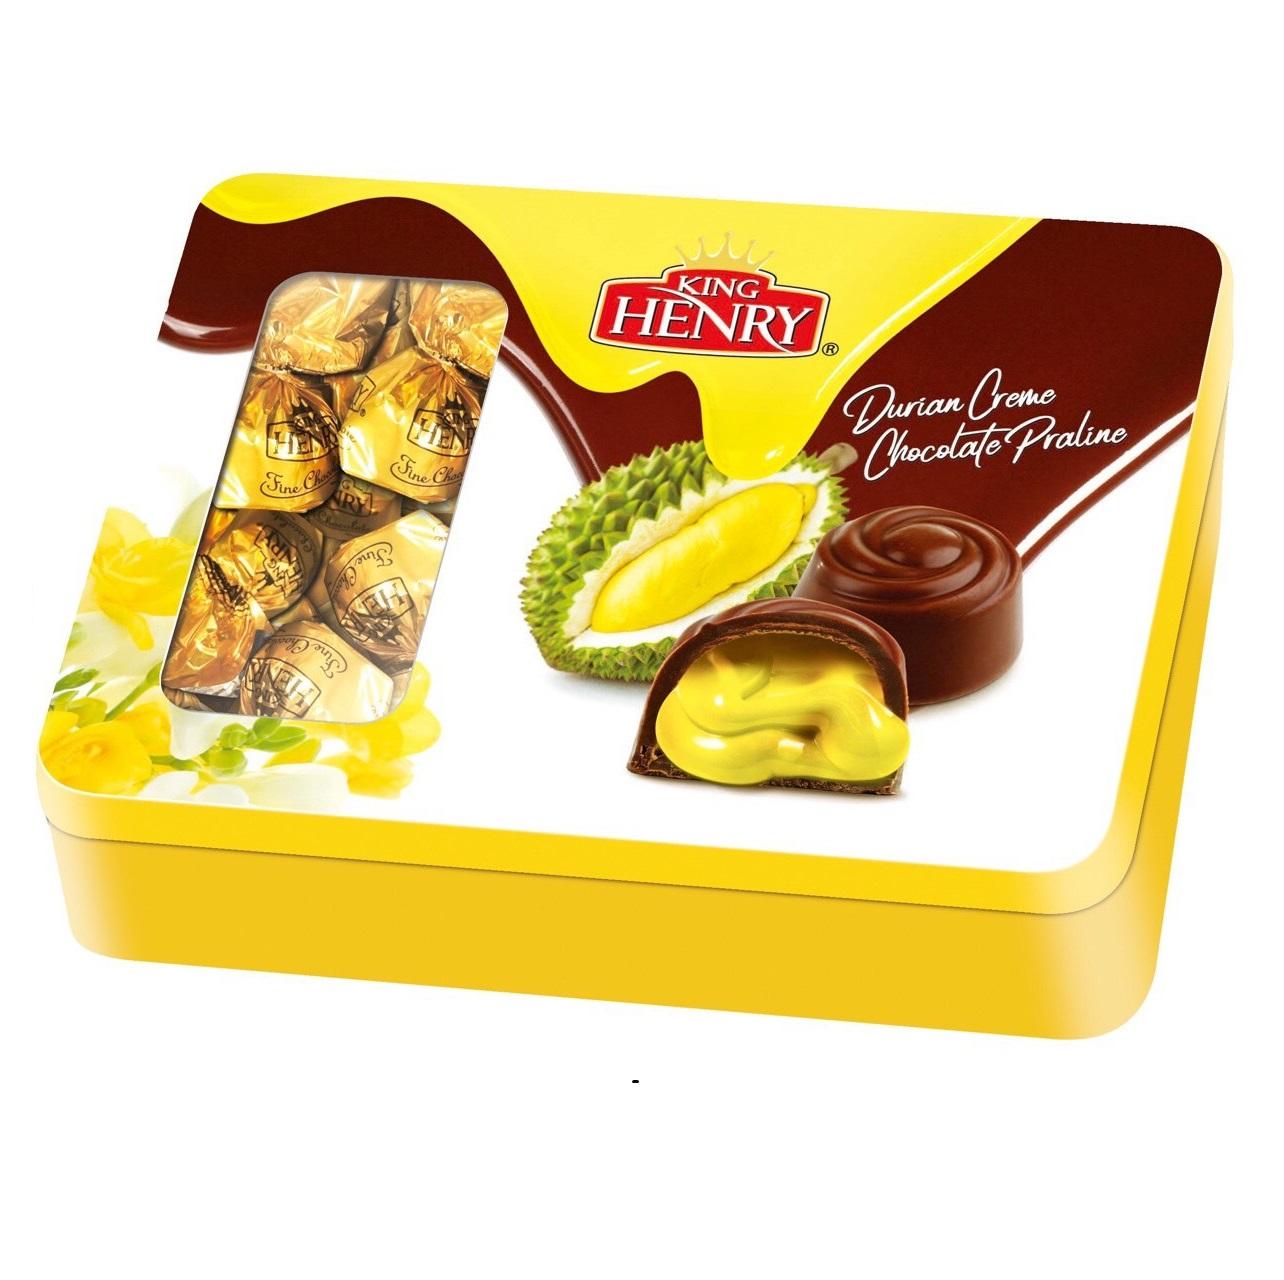 Bánh King Henry Durian Creme Chocolate Praline 316g -màu vàng